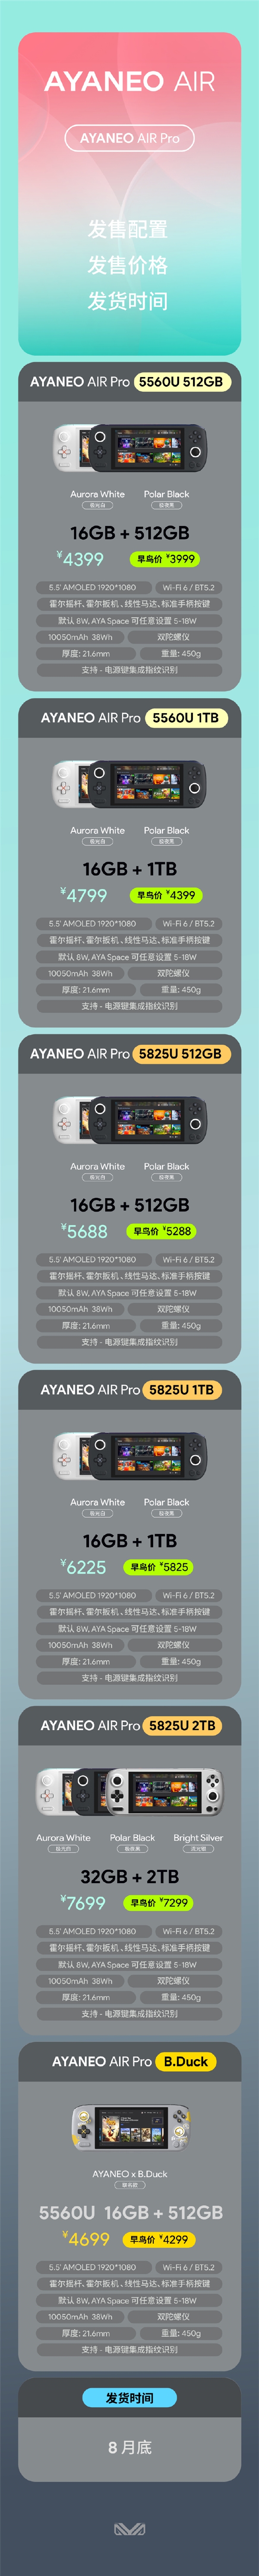 ayaneoairpro正式发布，售价4399元起